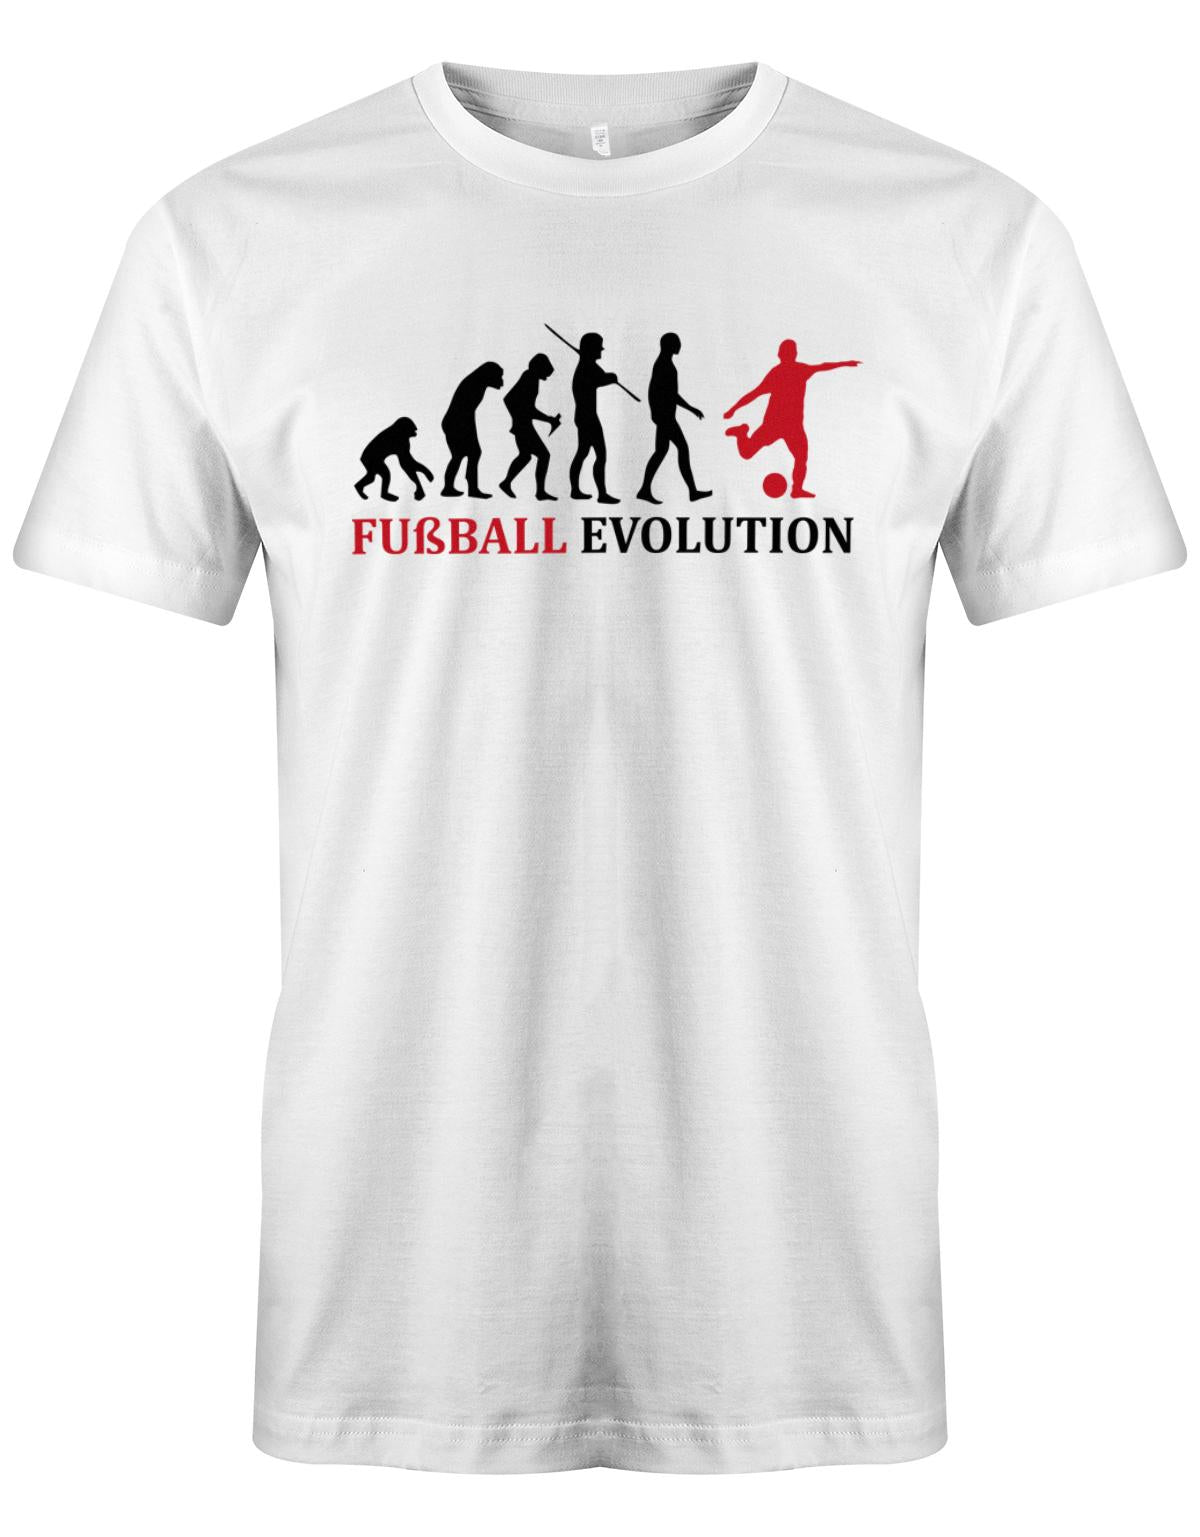 Fussball-Evolution-Herren-Shirt-Weiss-Rot